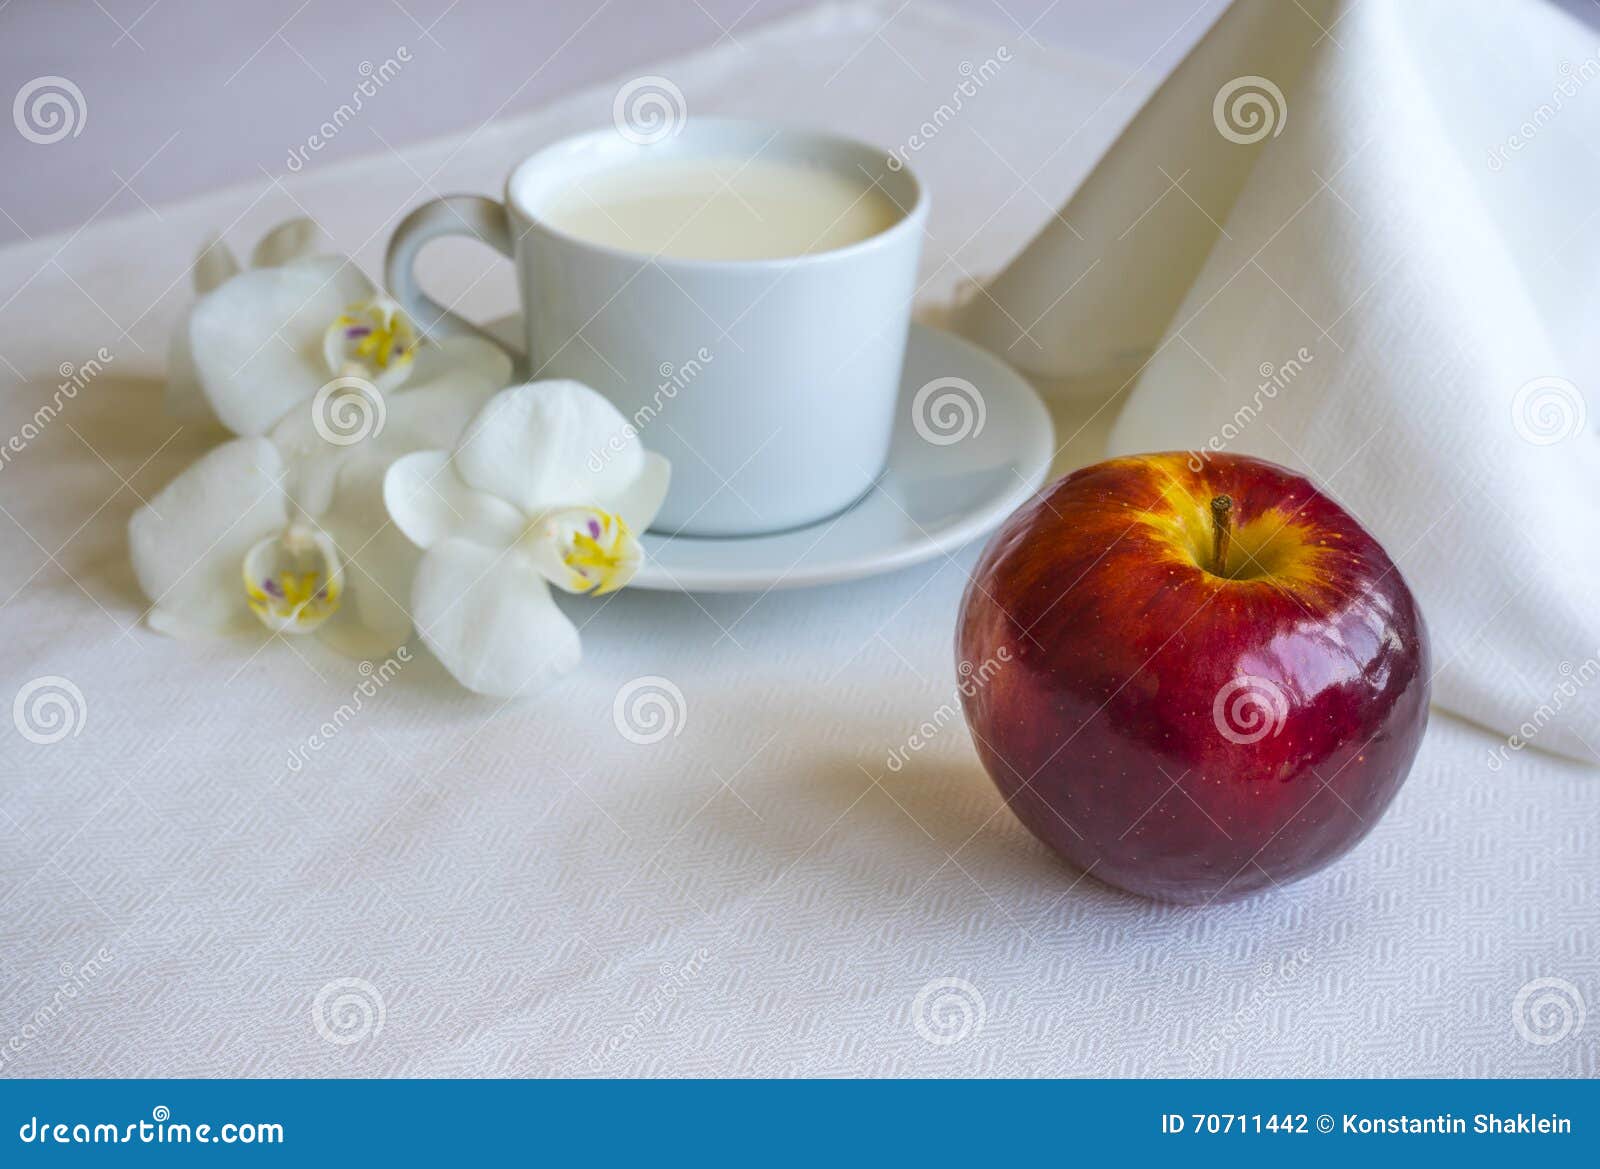 苹果牛奶 免版税库存照片 - 图片: 16534365